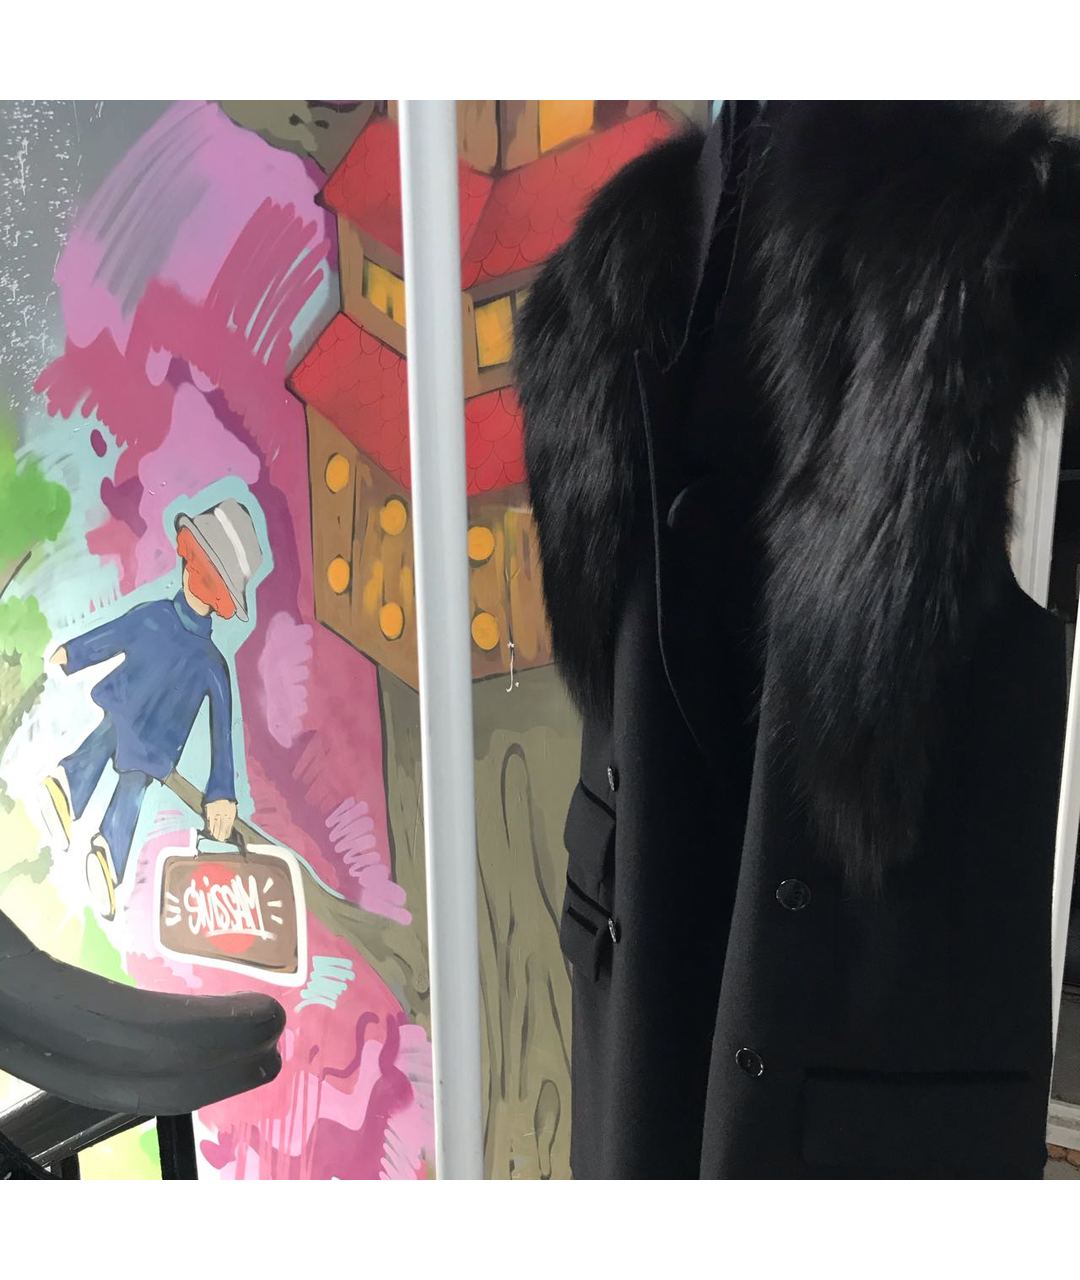 DOLCE&GABBANA Черный шерстяной жакет/пиджак, фото 4